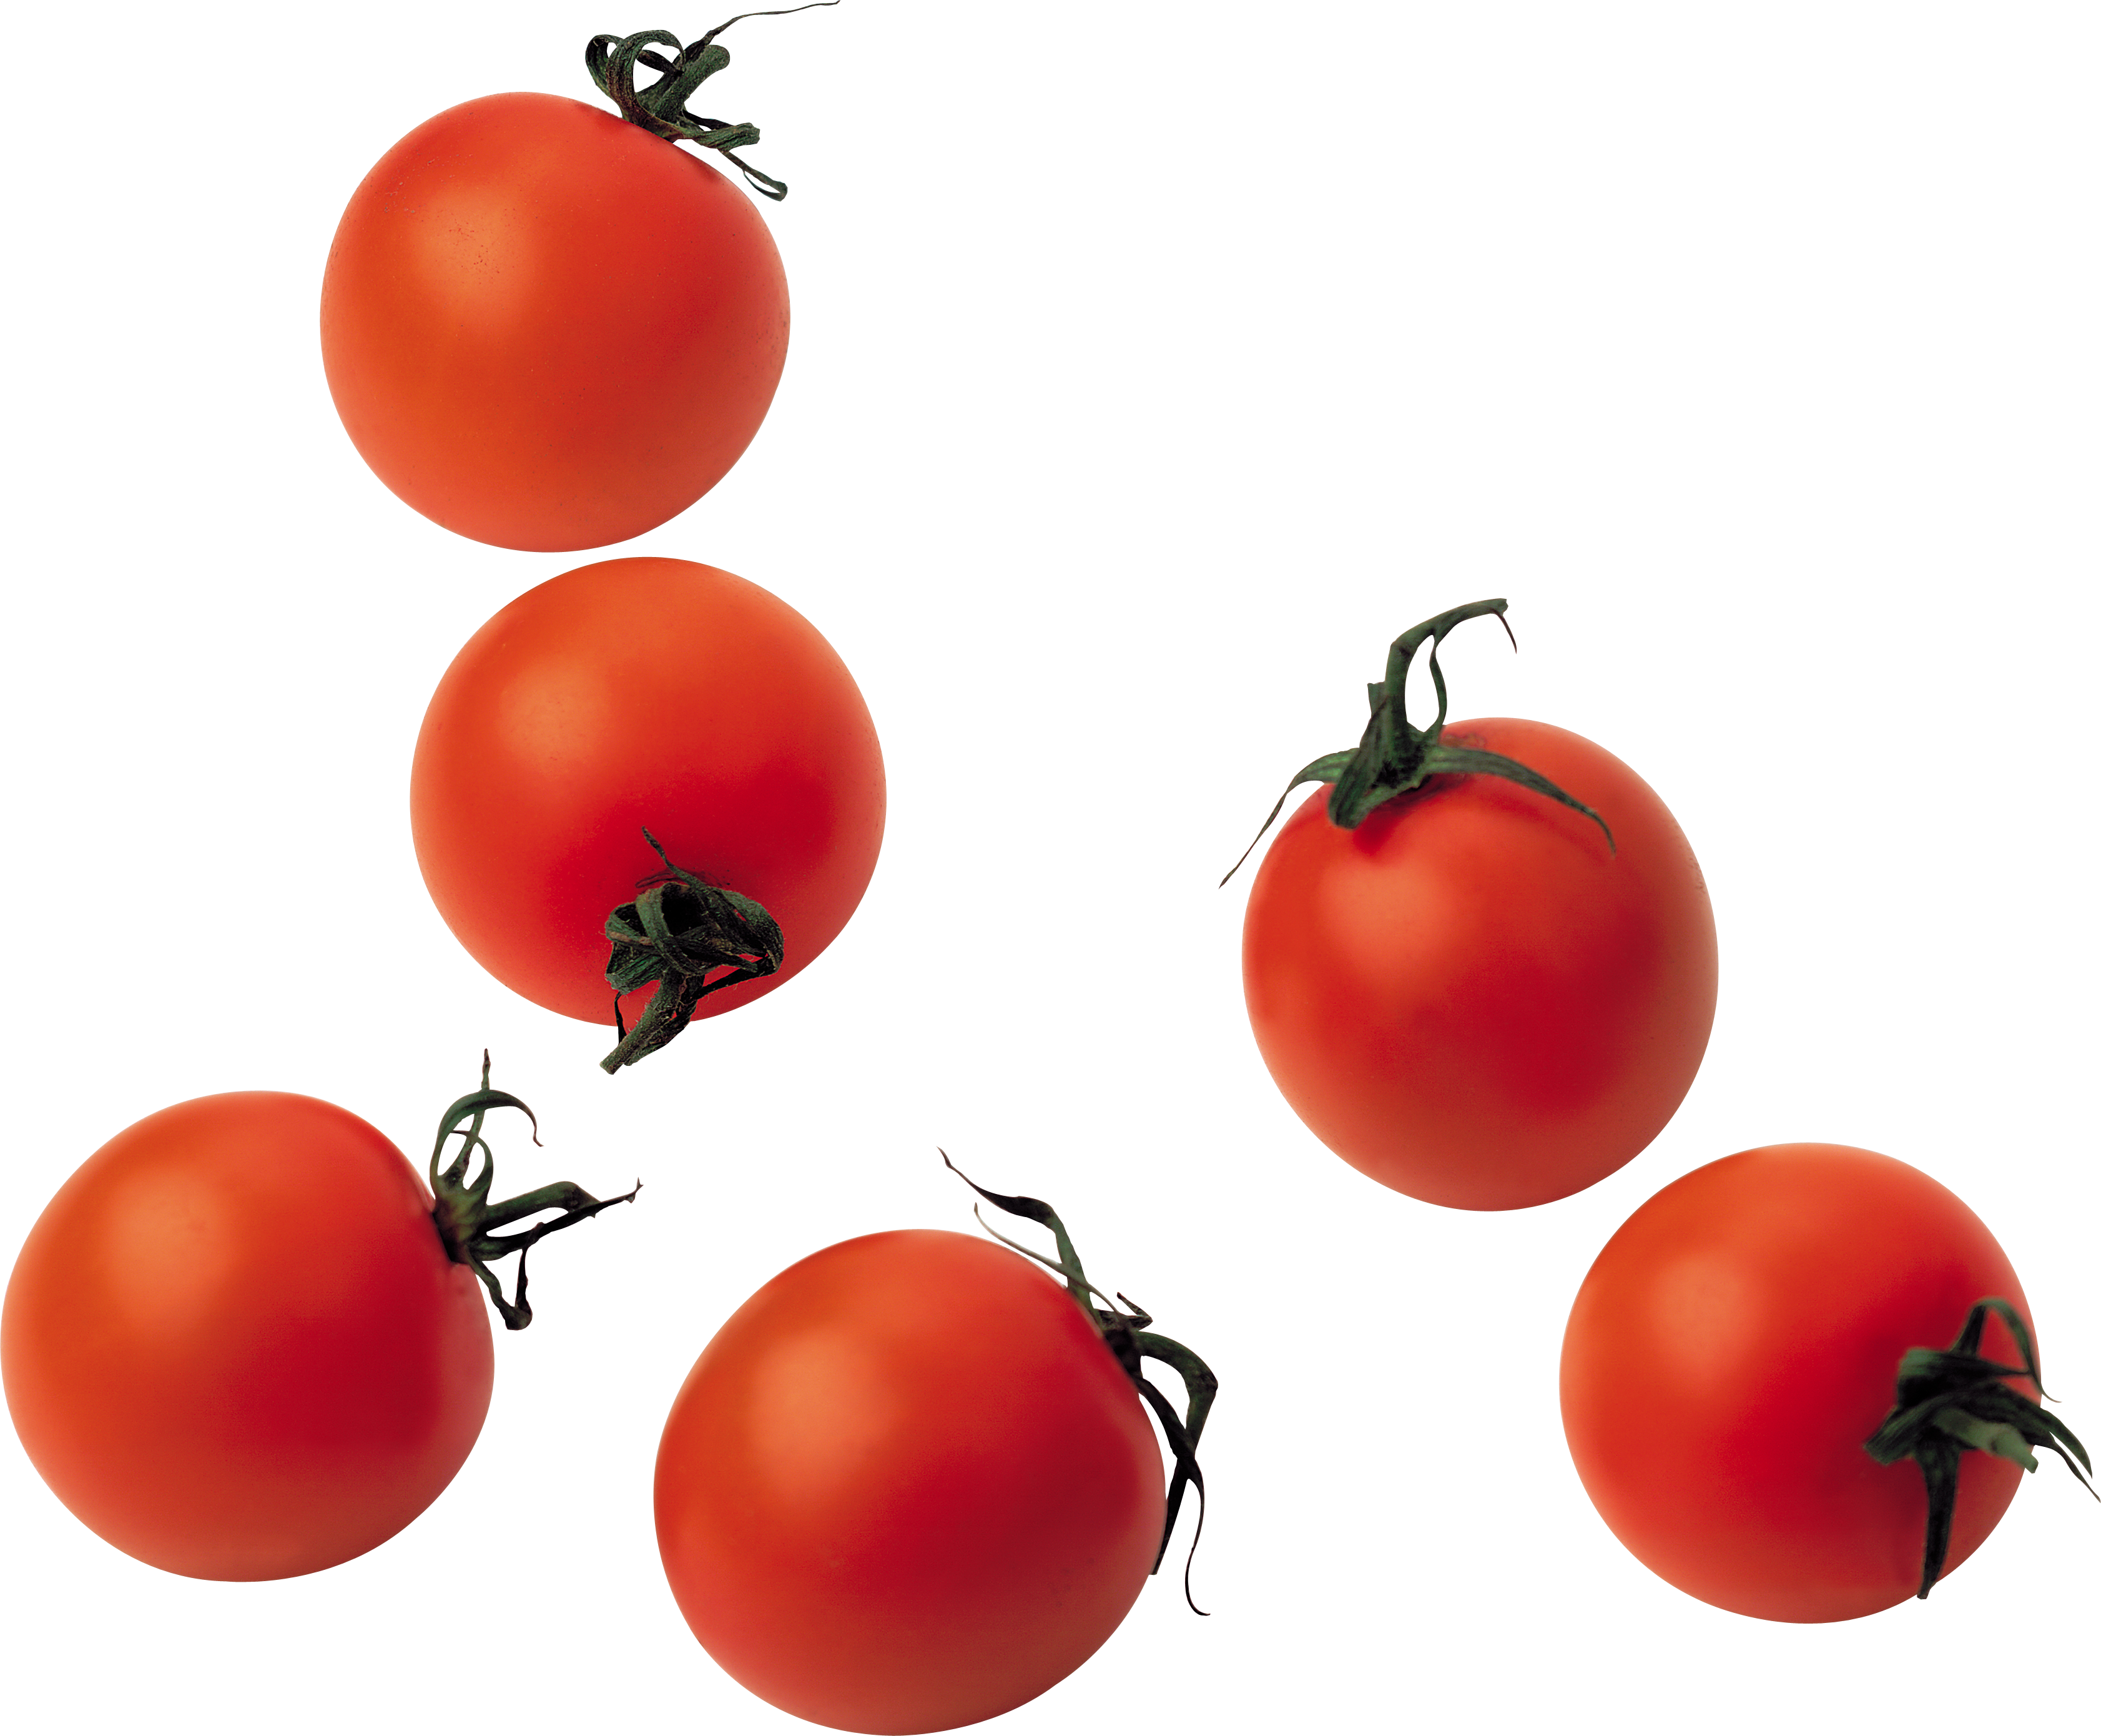 Cà chua cherry